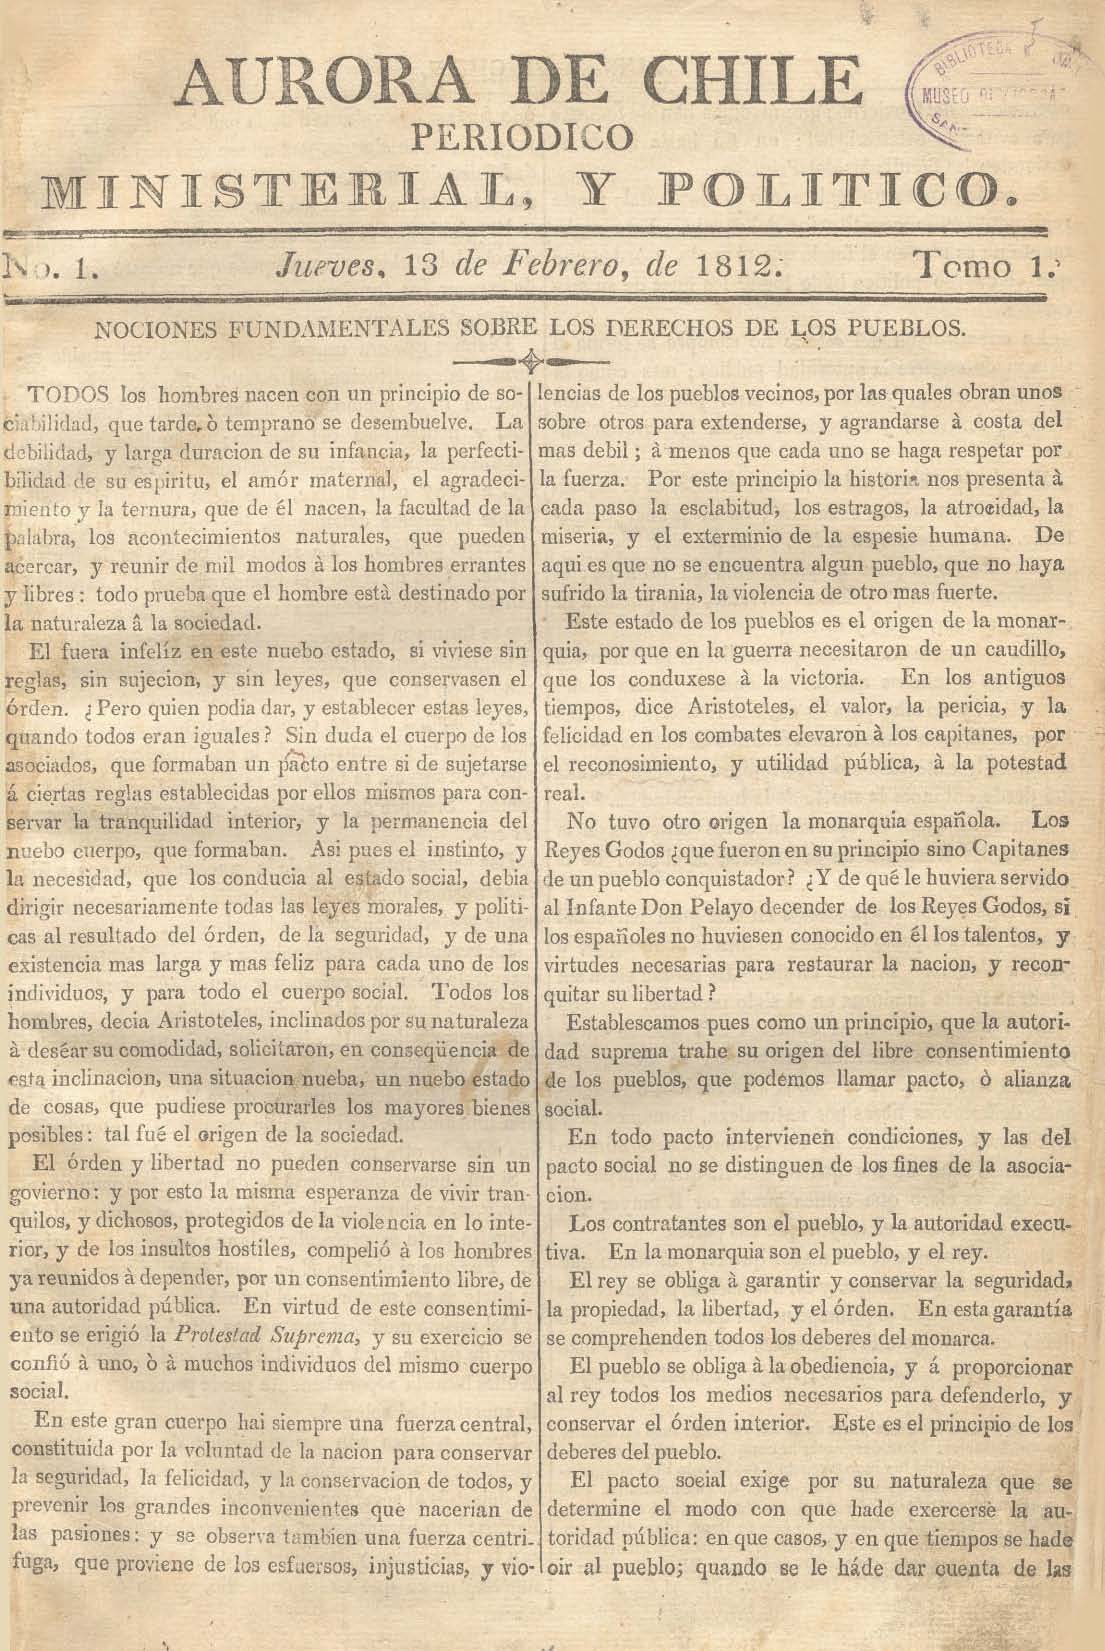 							Ver Núm. 3 (1813): Tomo II. Jueves 21 de Enero
						